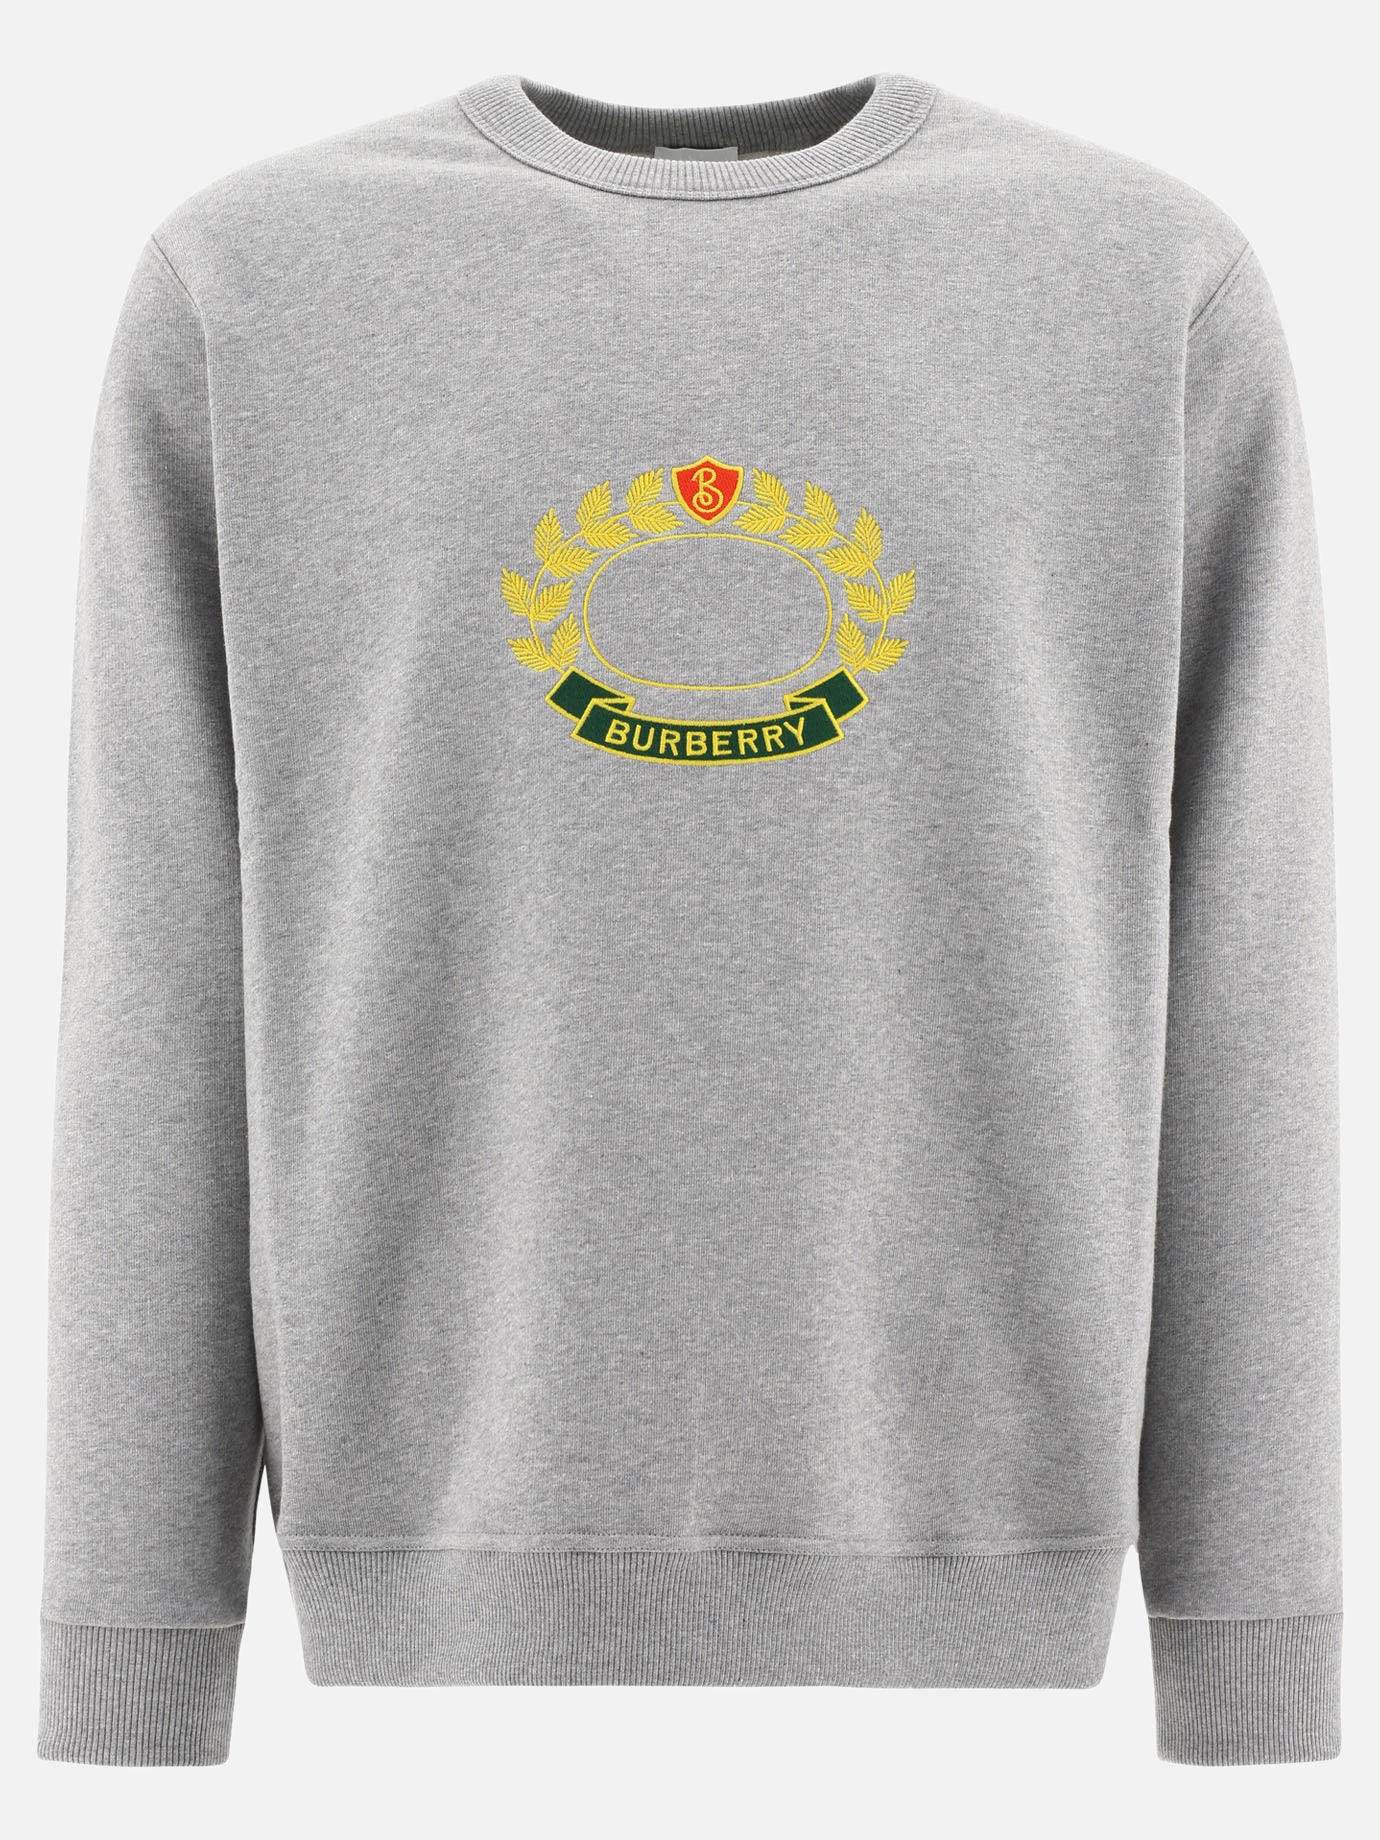 "Addiscombe" sweatshirt